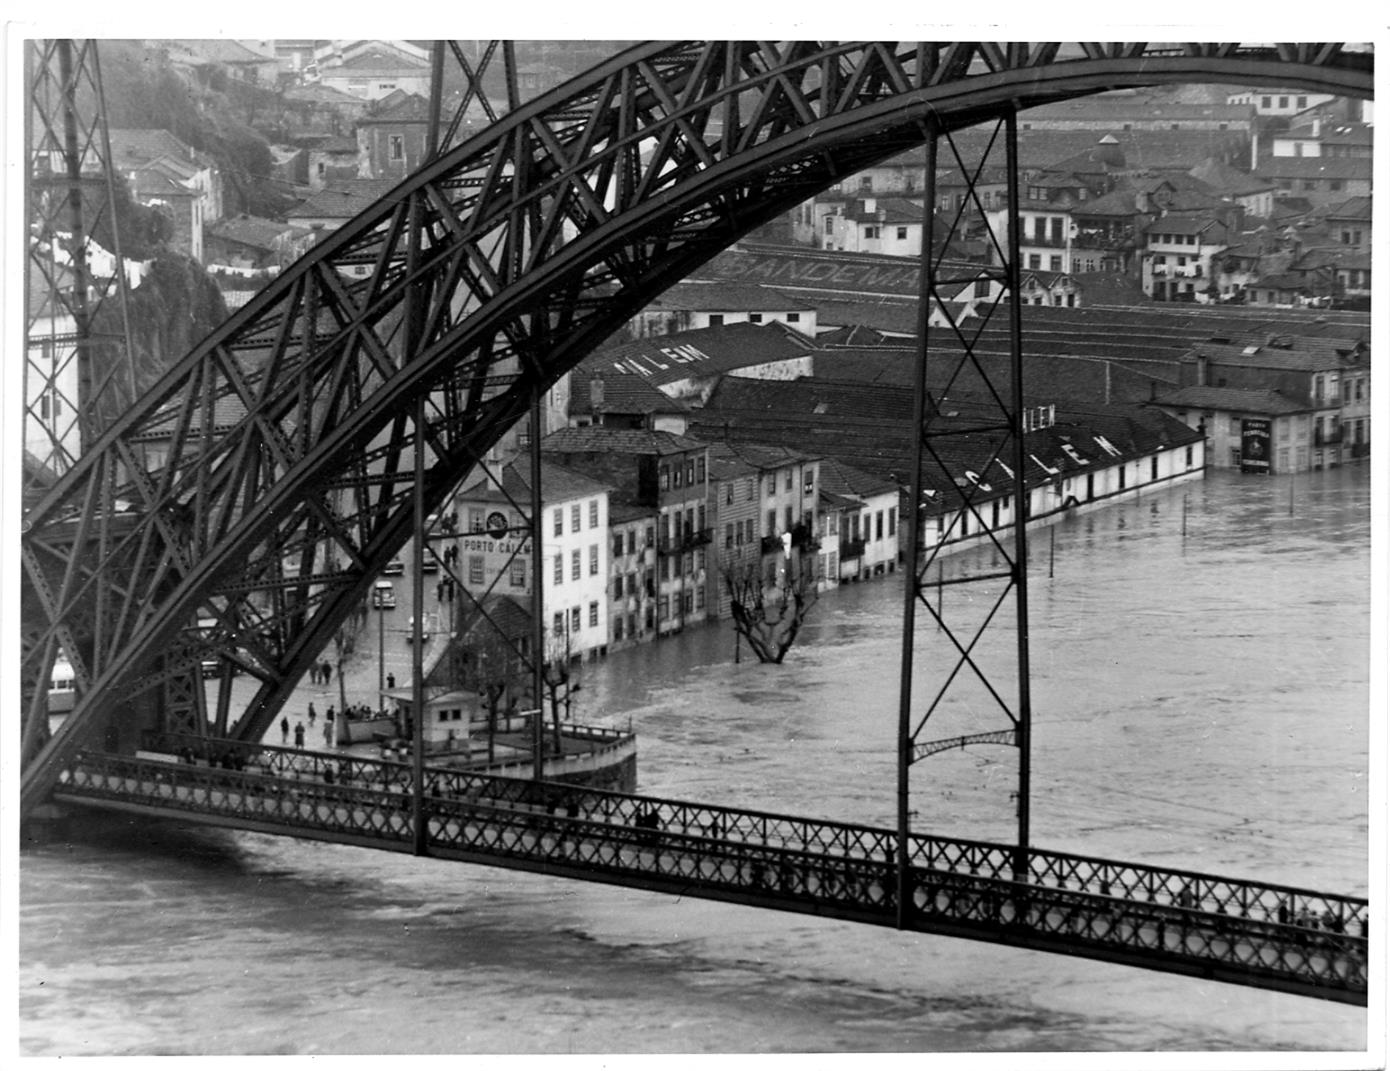 Porto - Gaia : as travessias do Rio Douro : a ponte Luís I durante as cheias de 1962